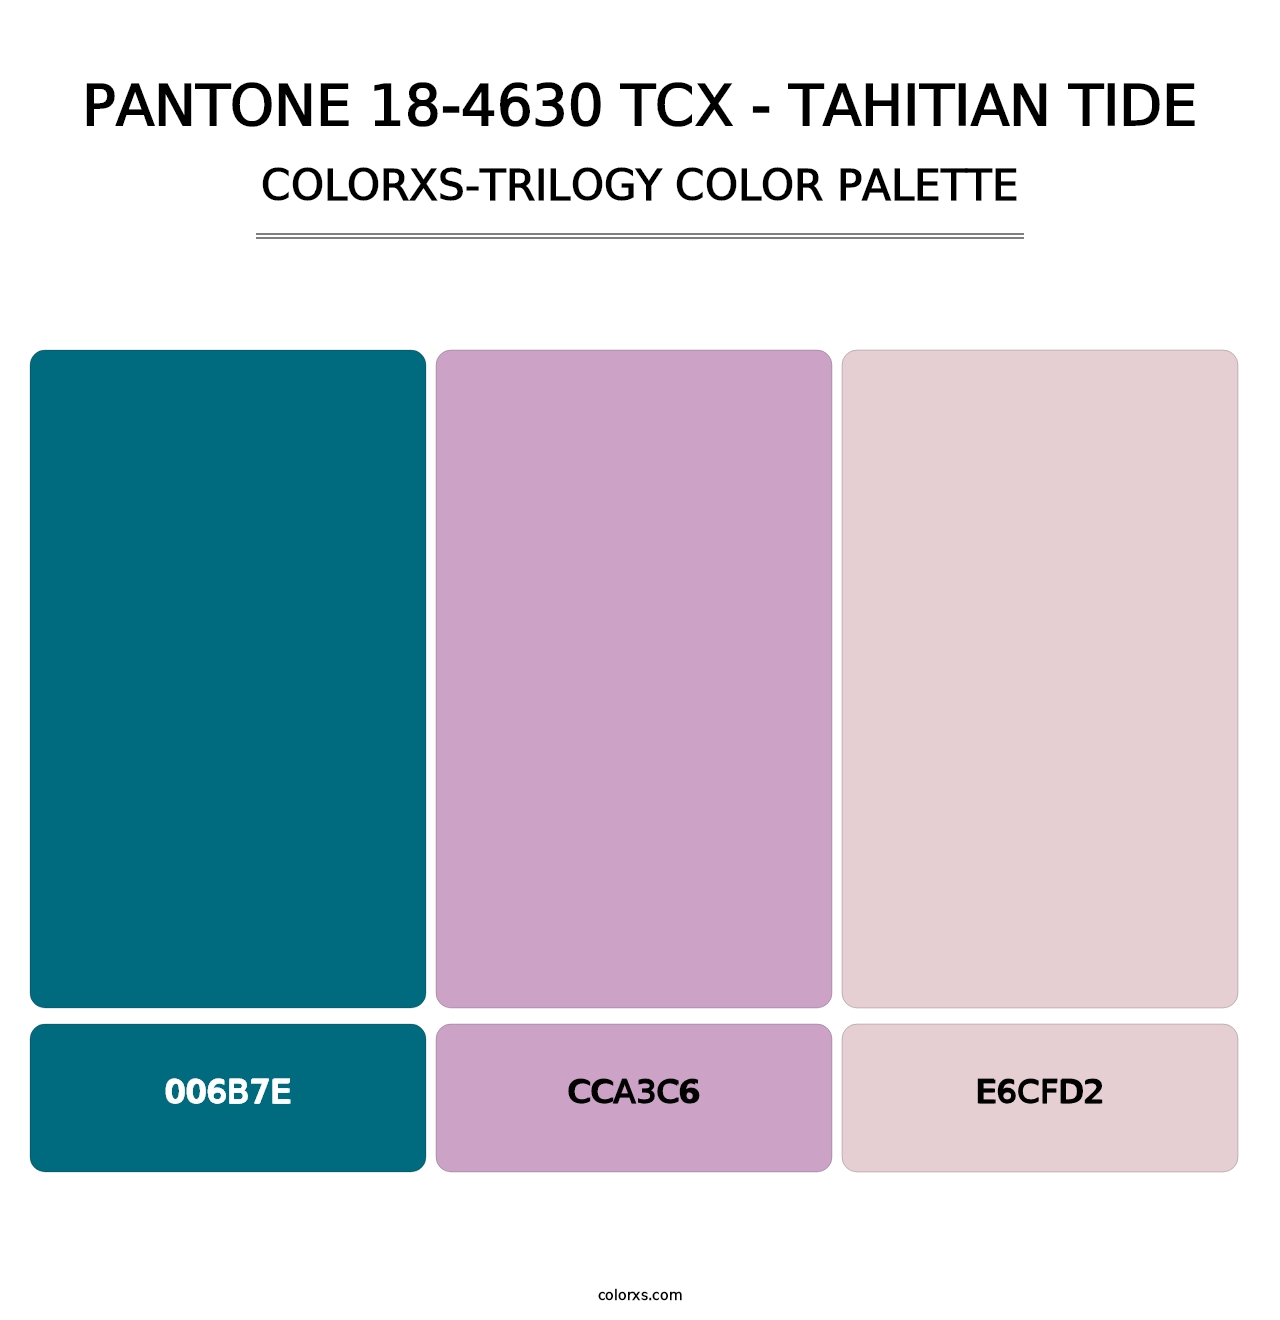 PANTONE 18-4630 TCX - Tahitian Tide - Colorxs Trilogy Palette